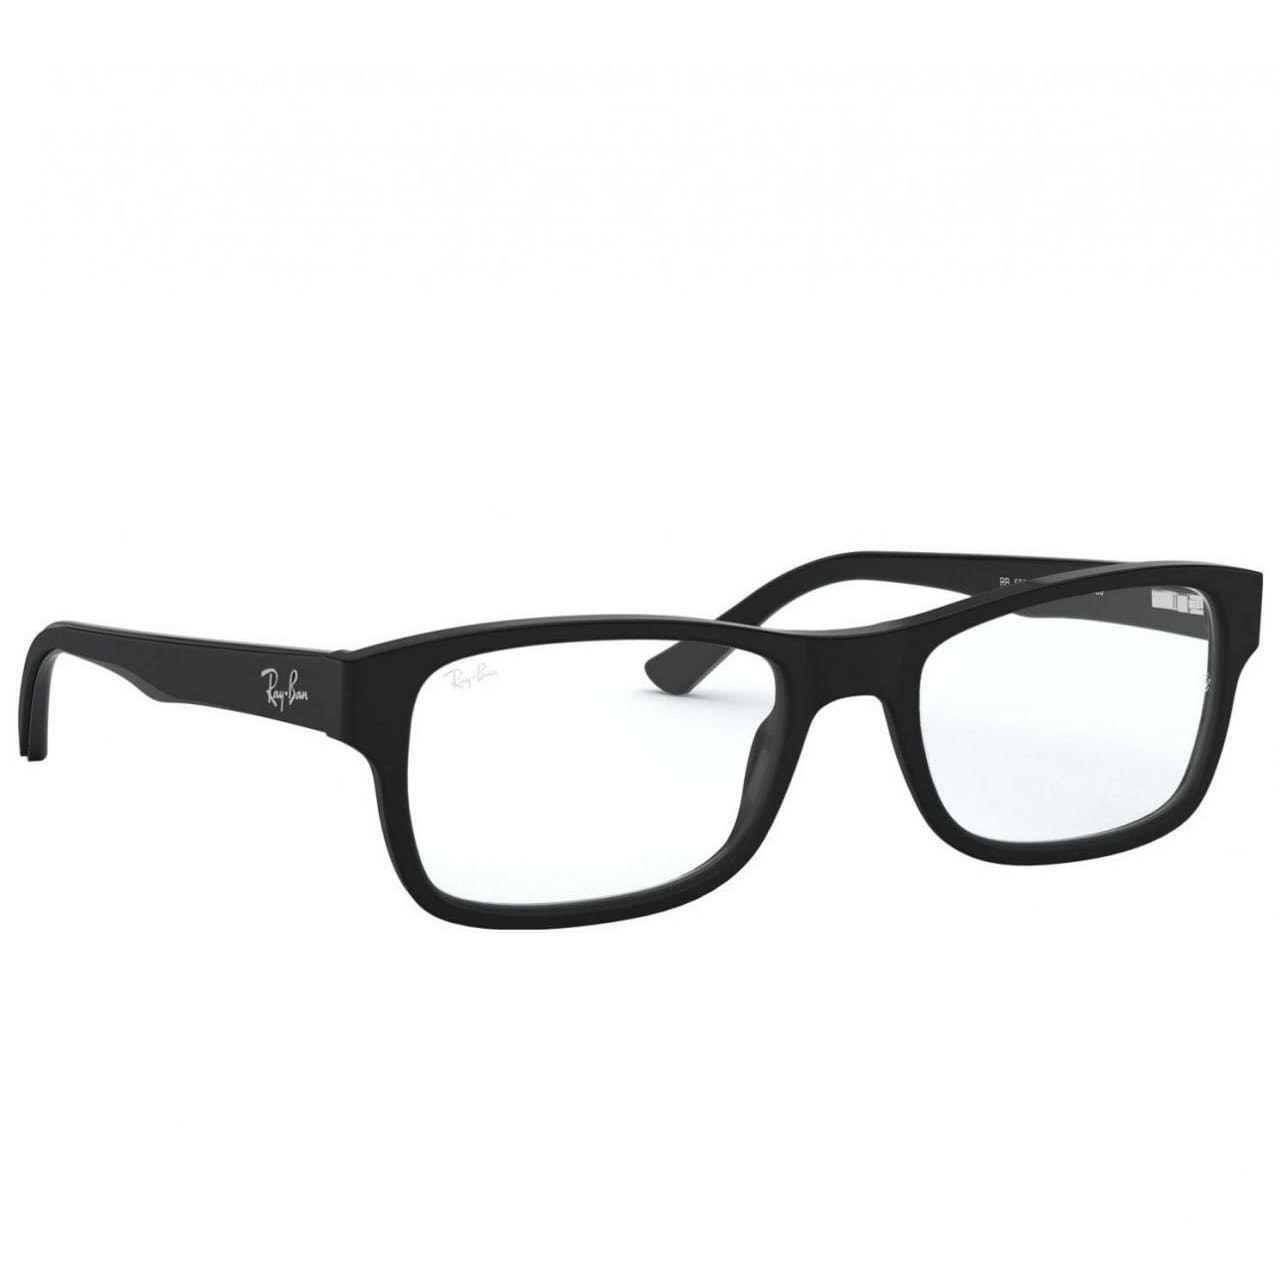 Ray-Ban RB5268-5119 Black Full Rim Rectangular Eyeglasses 